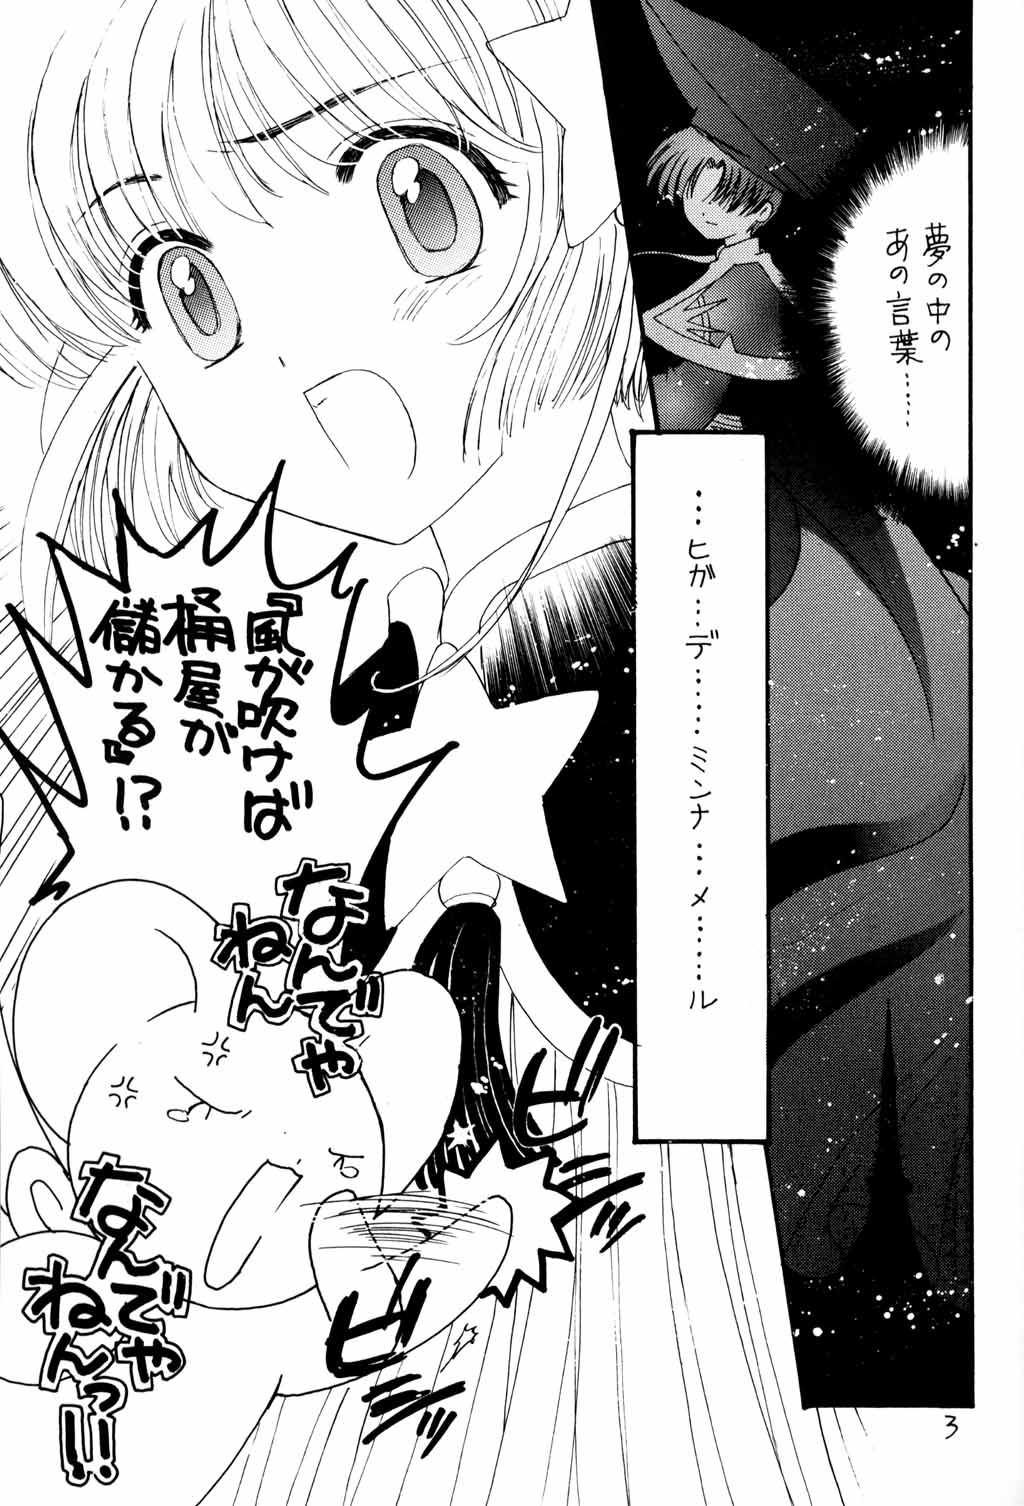 Cogida Kura Kura Sakura - Cardcaptor sakura Pussy Licking - Page 2